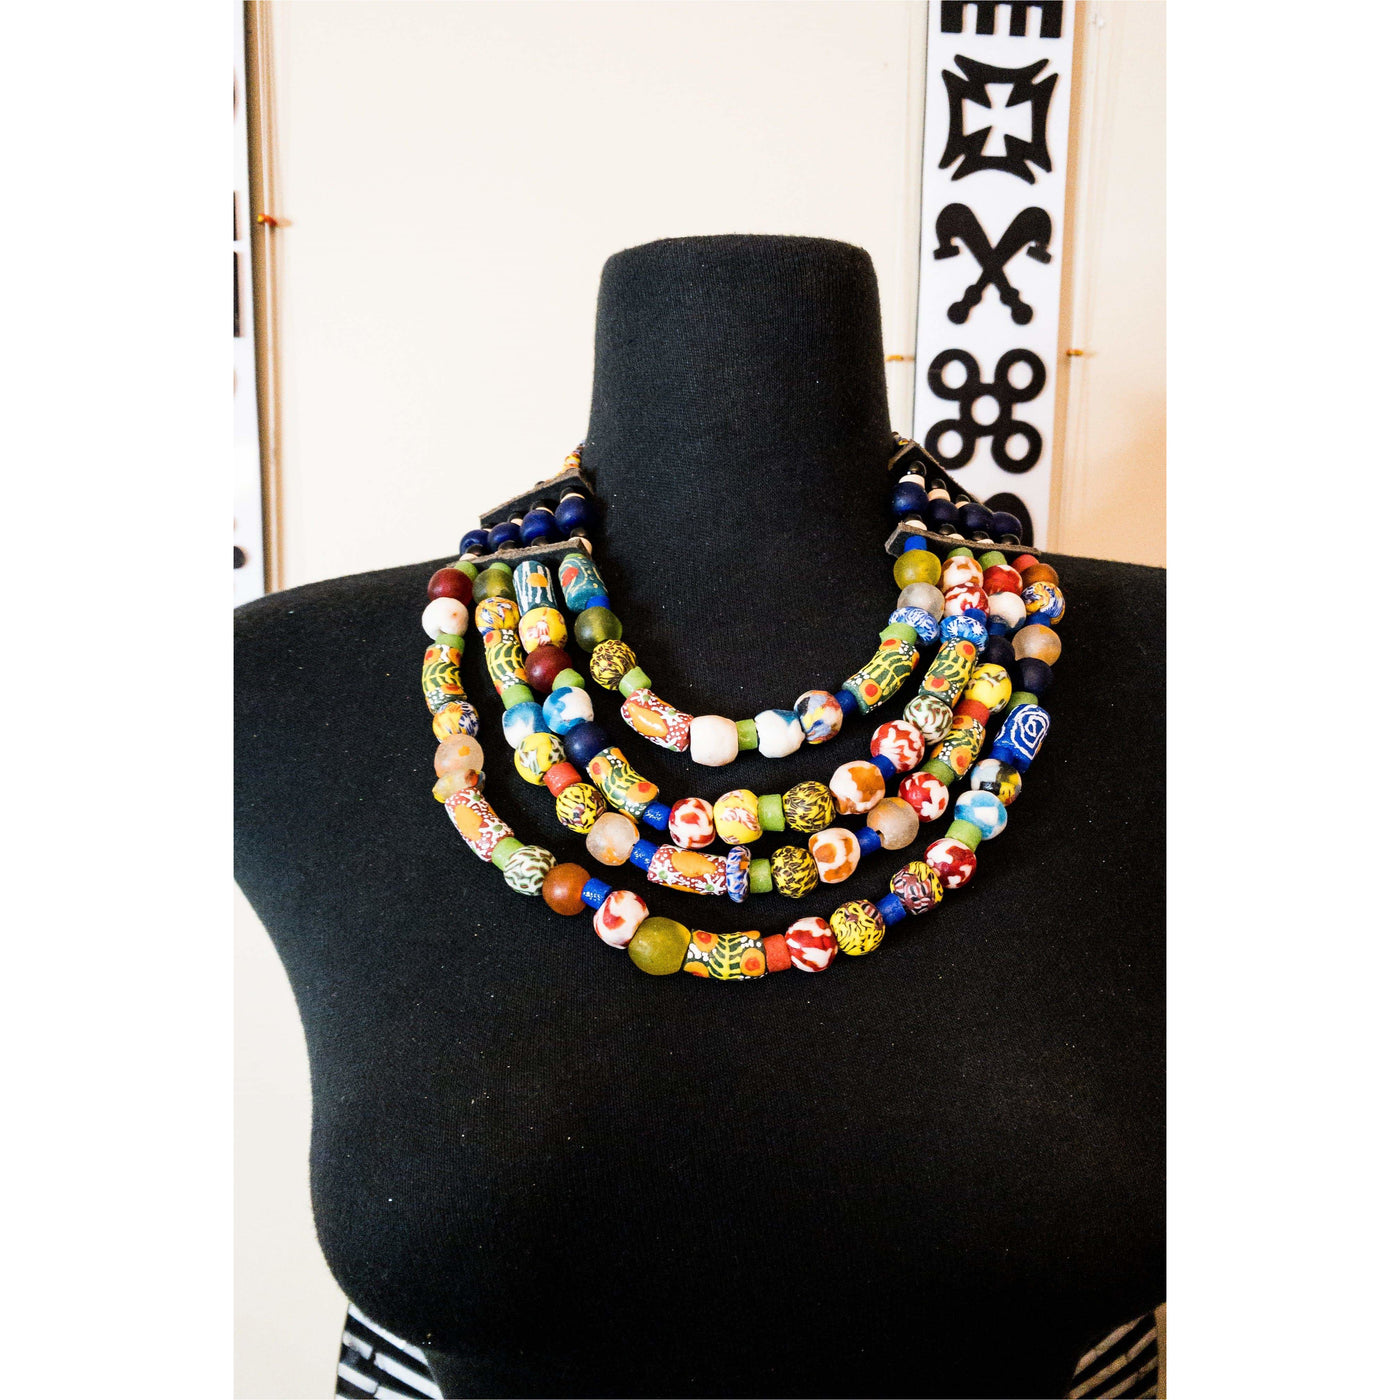 Copy of Krobo beads necklace - Trufacebygrace